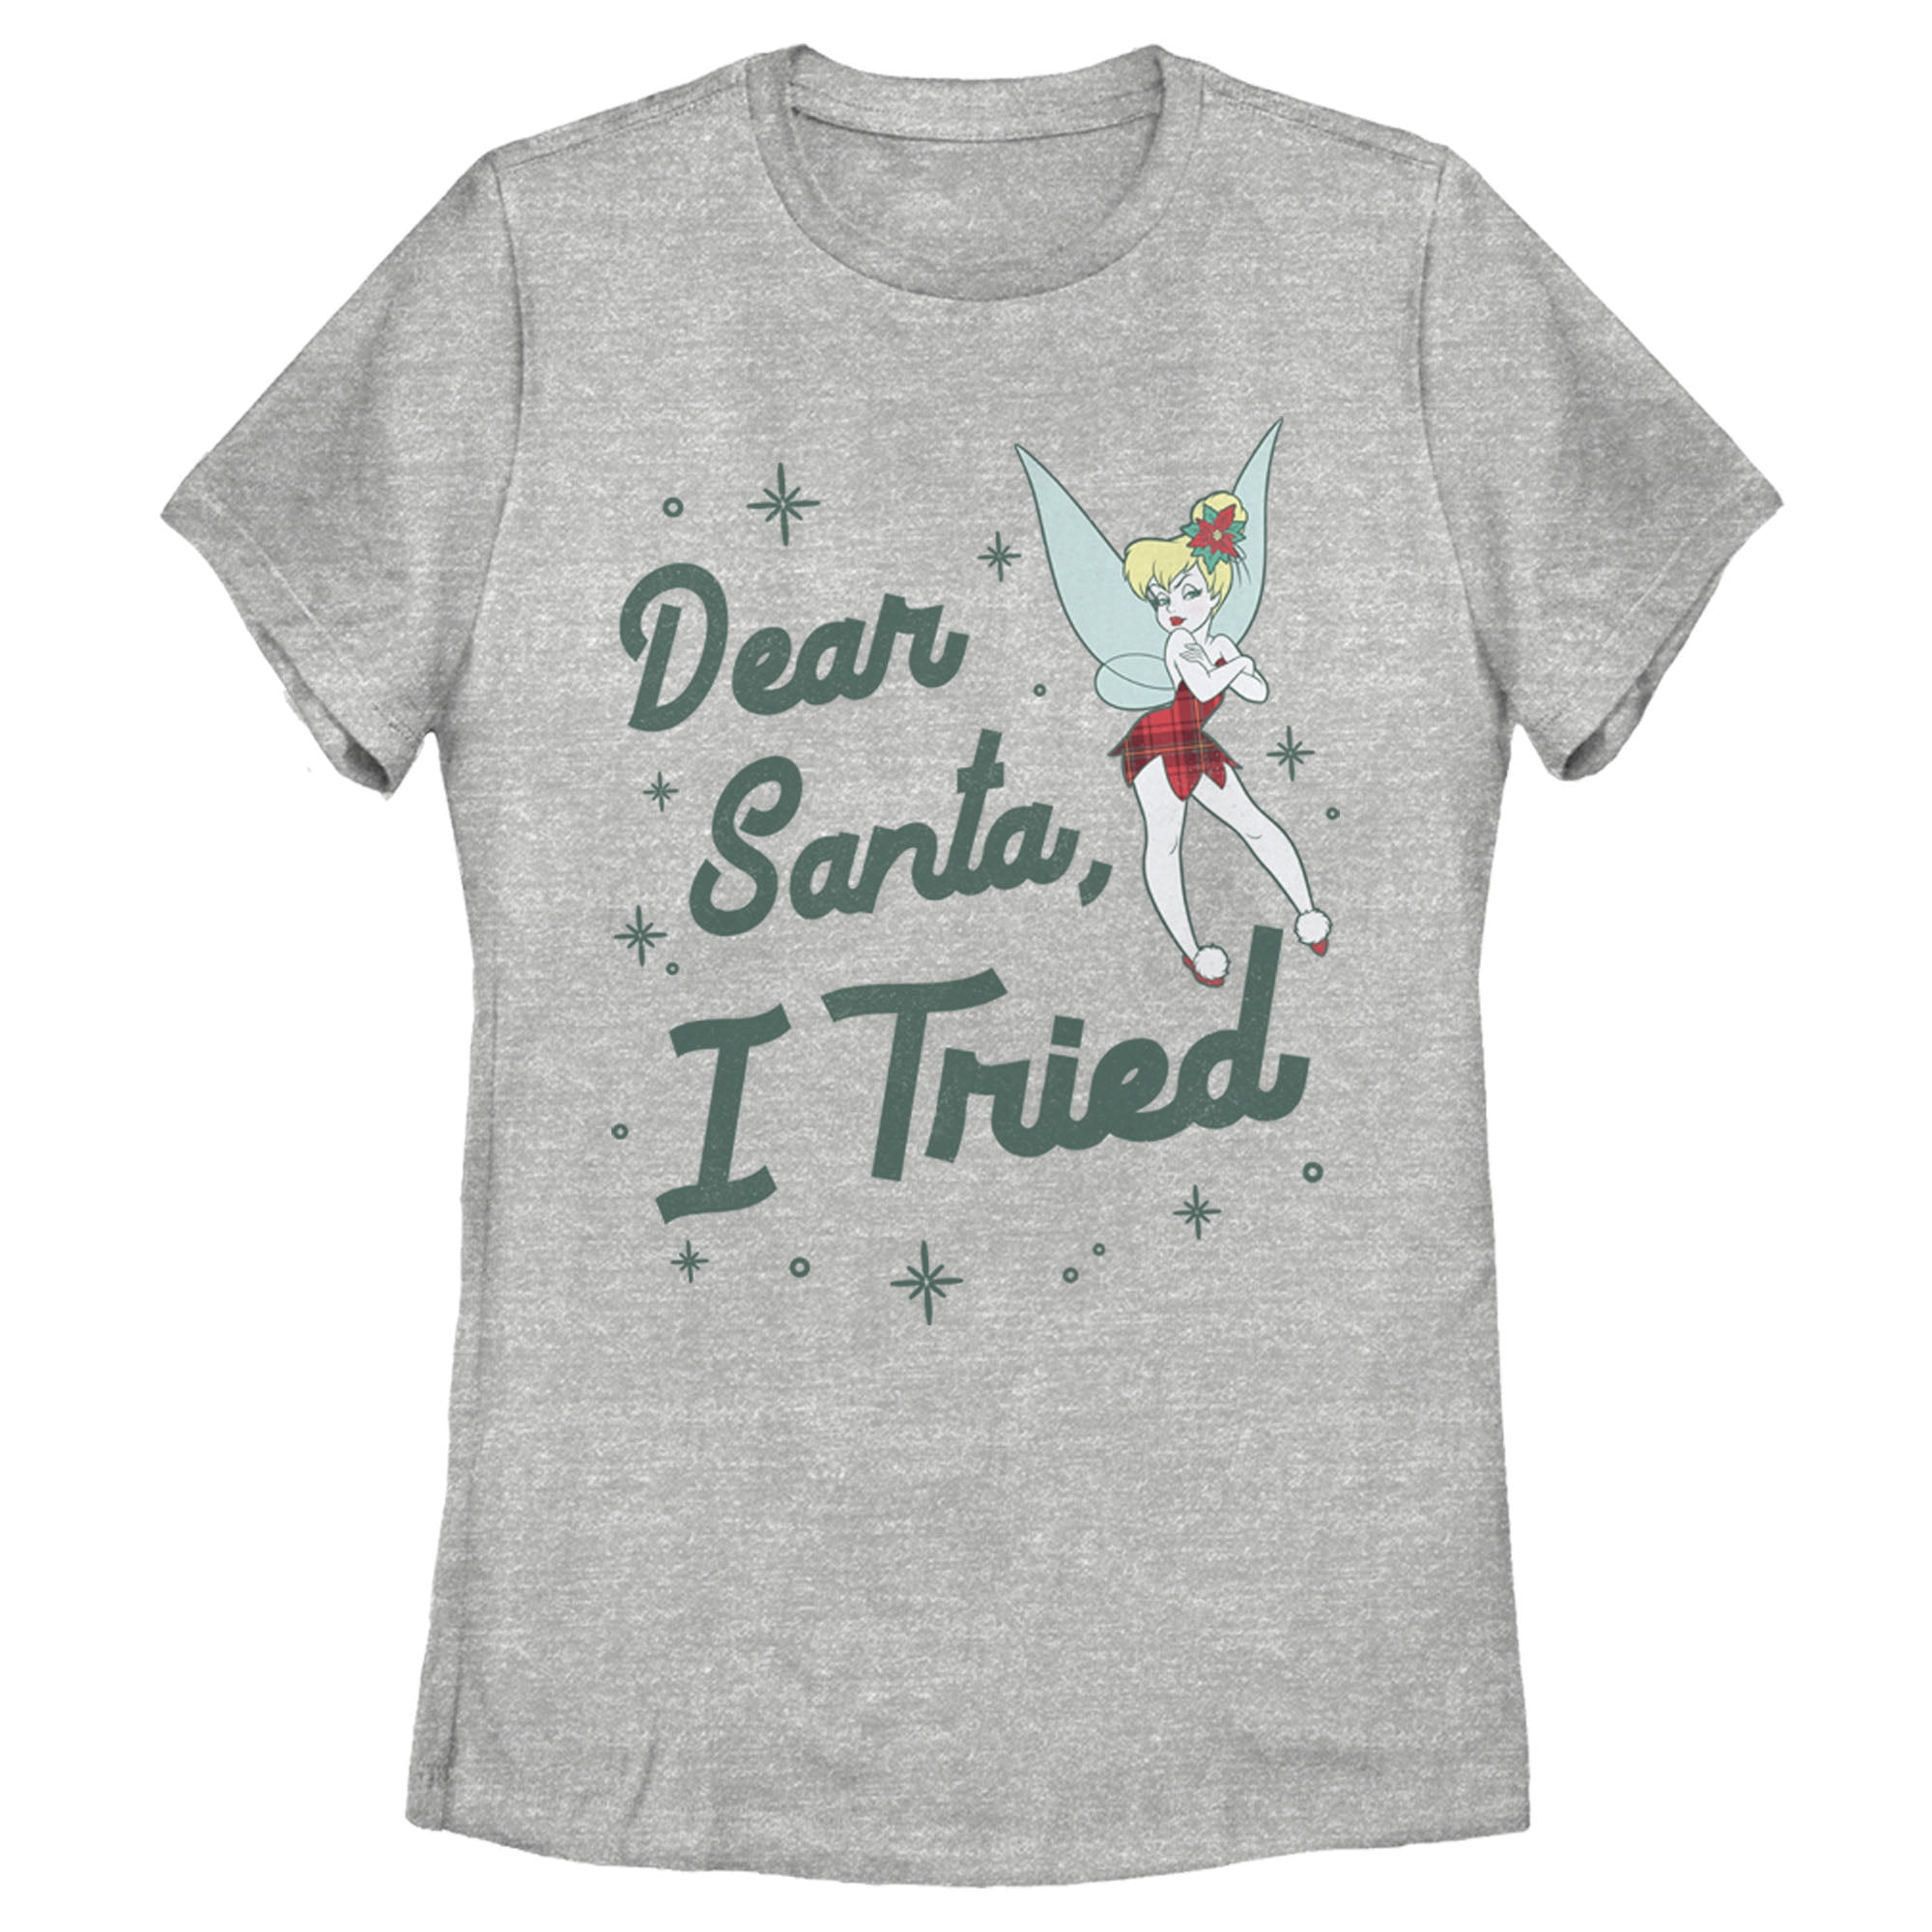 Women's Disney Peter Pan Tinker Bell Dear Santa, I Tried T-Shirt